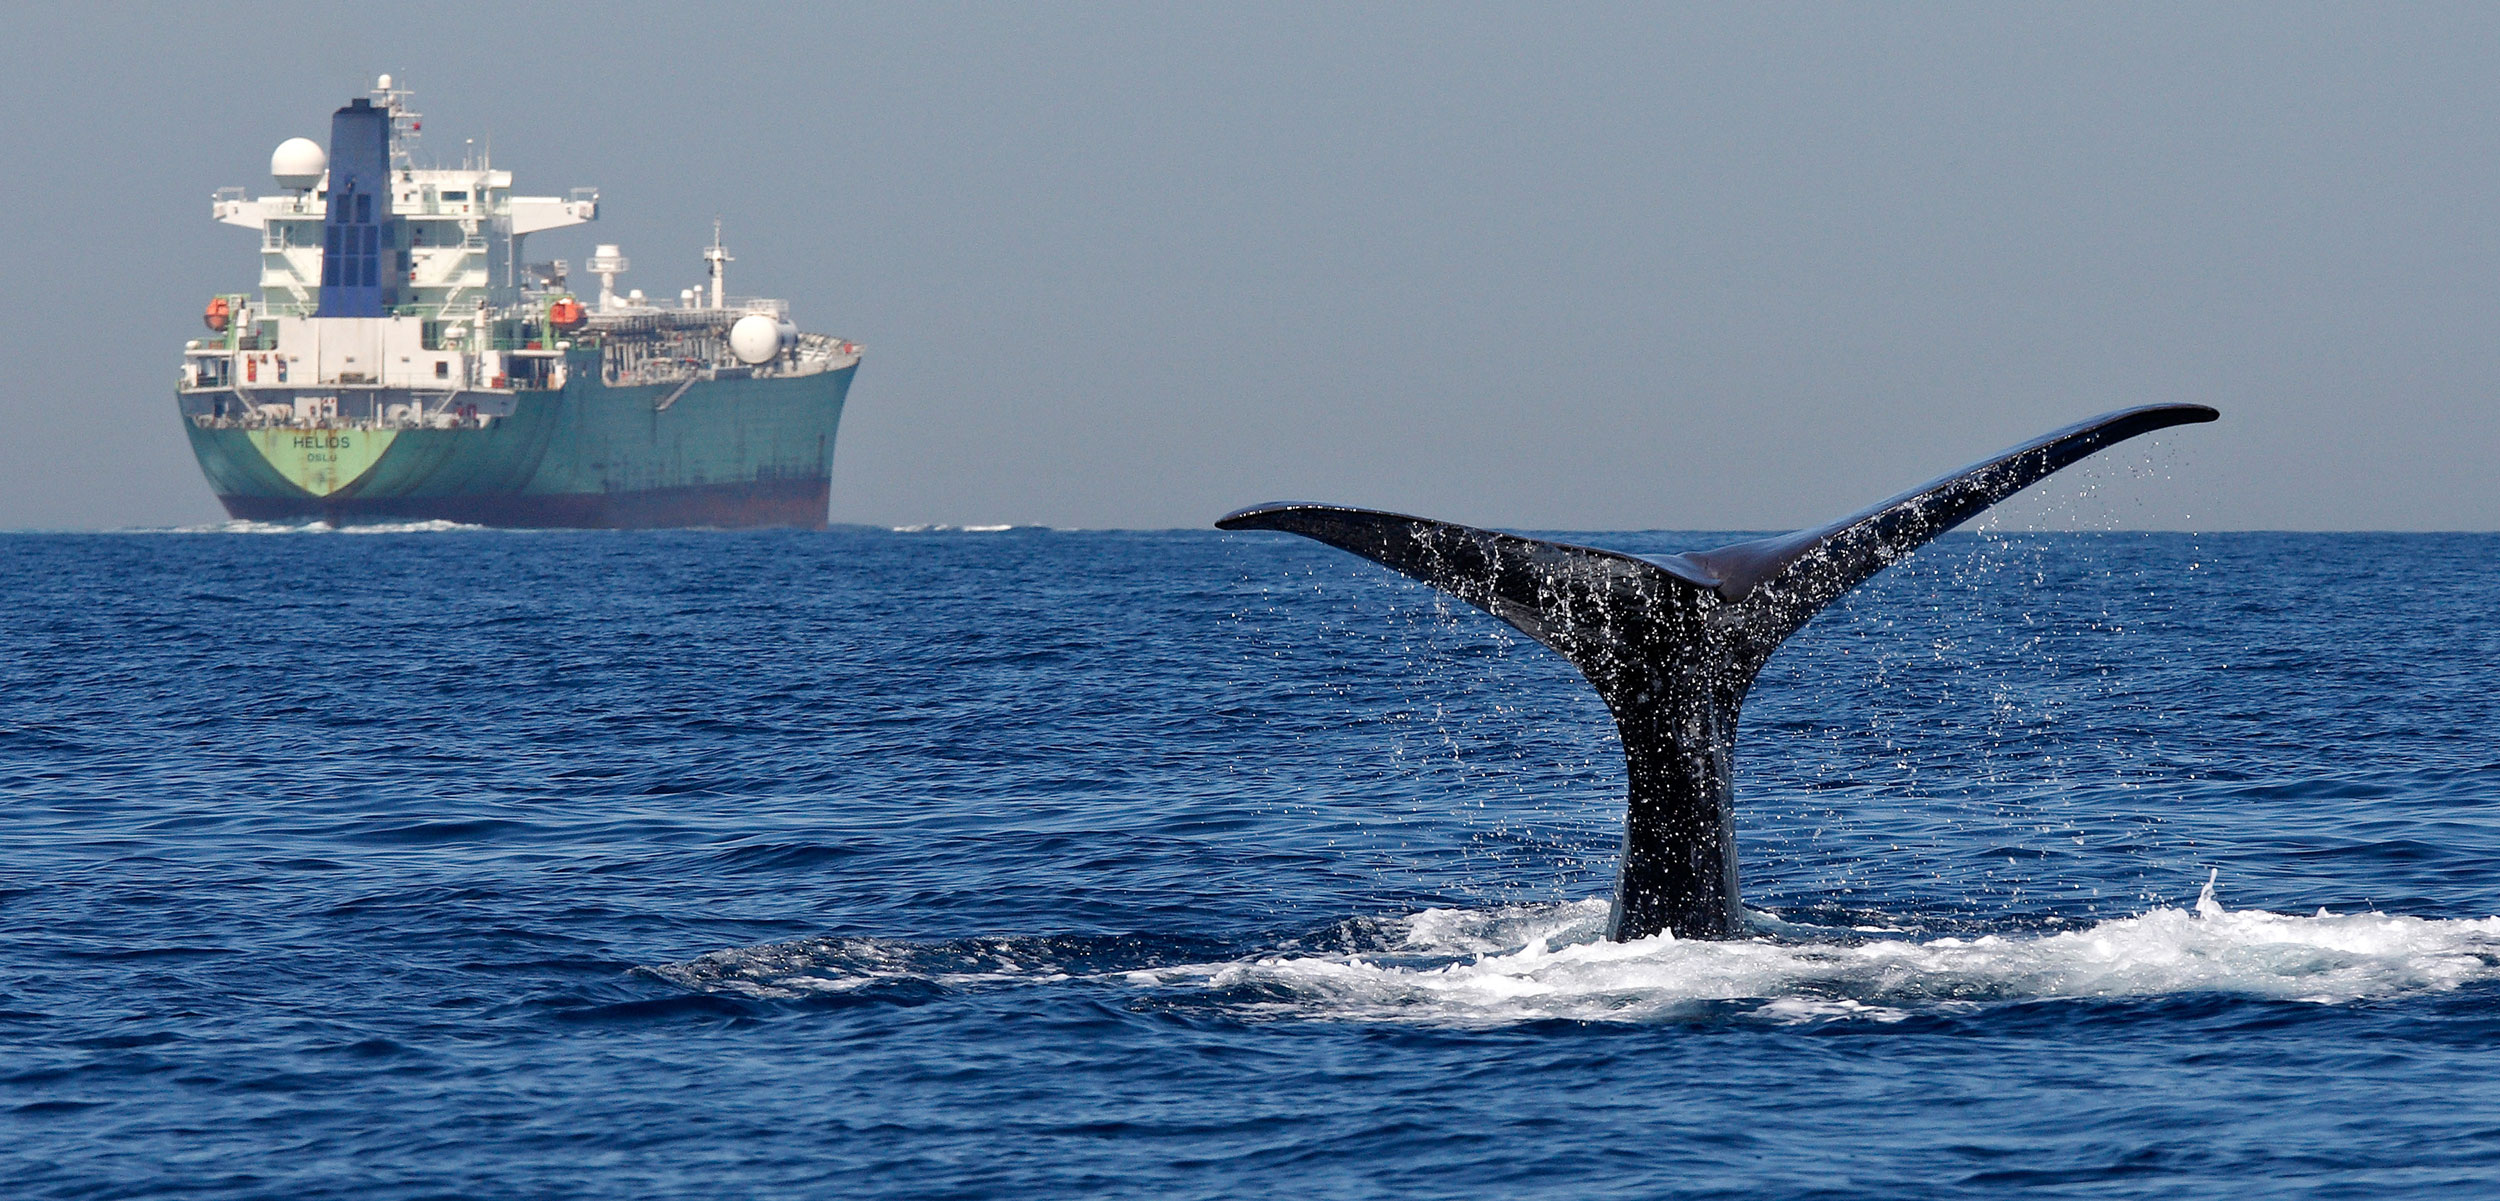 Sperm whale fluke and cargo ship